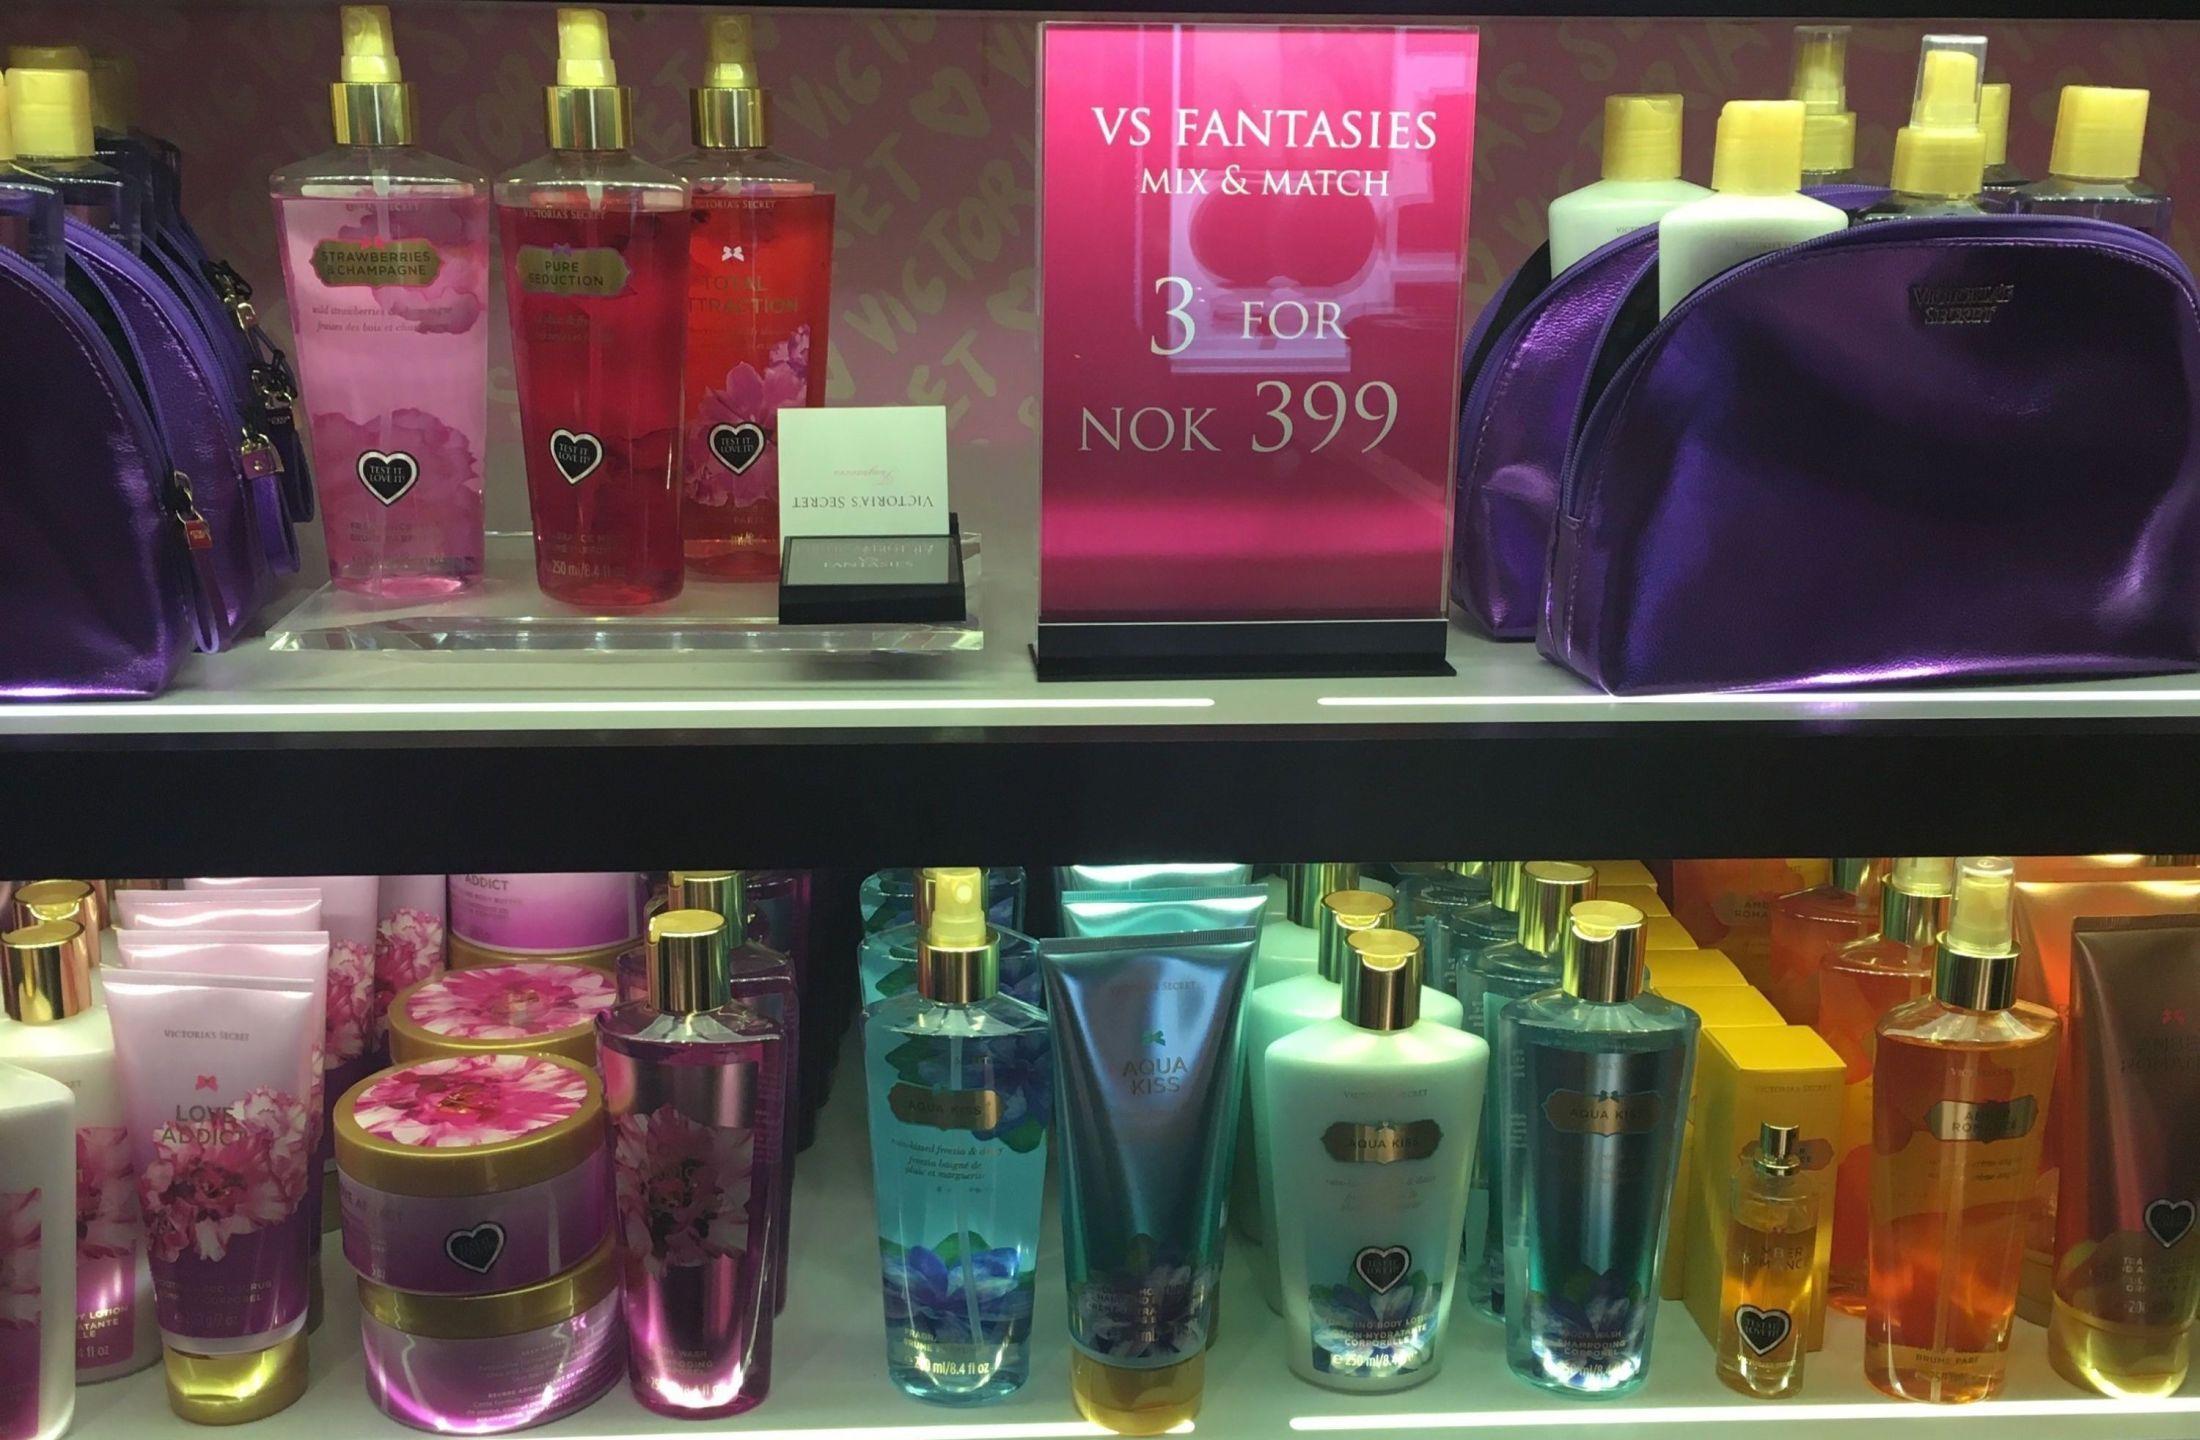 MATCHENDE LUKT: Mange av produktene lukter det samme, men det betyr ikke at du trenger å kjøpe hele serien. Foto: MinMote